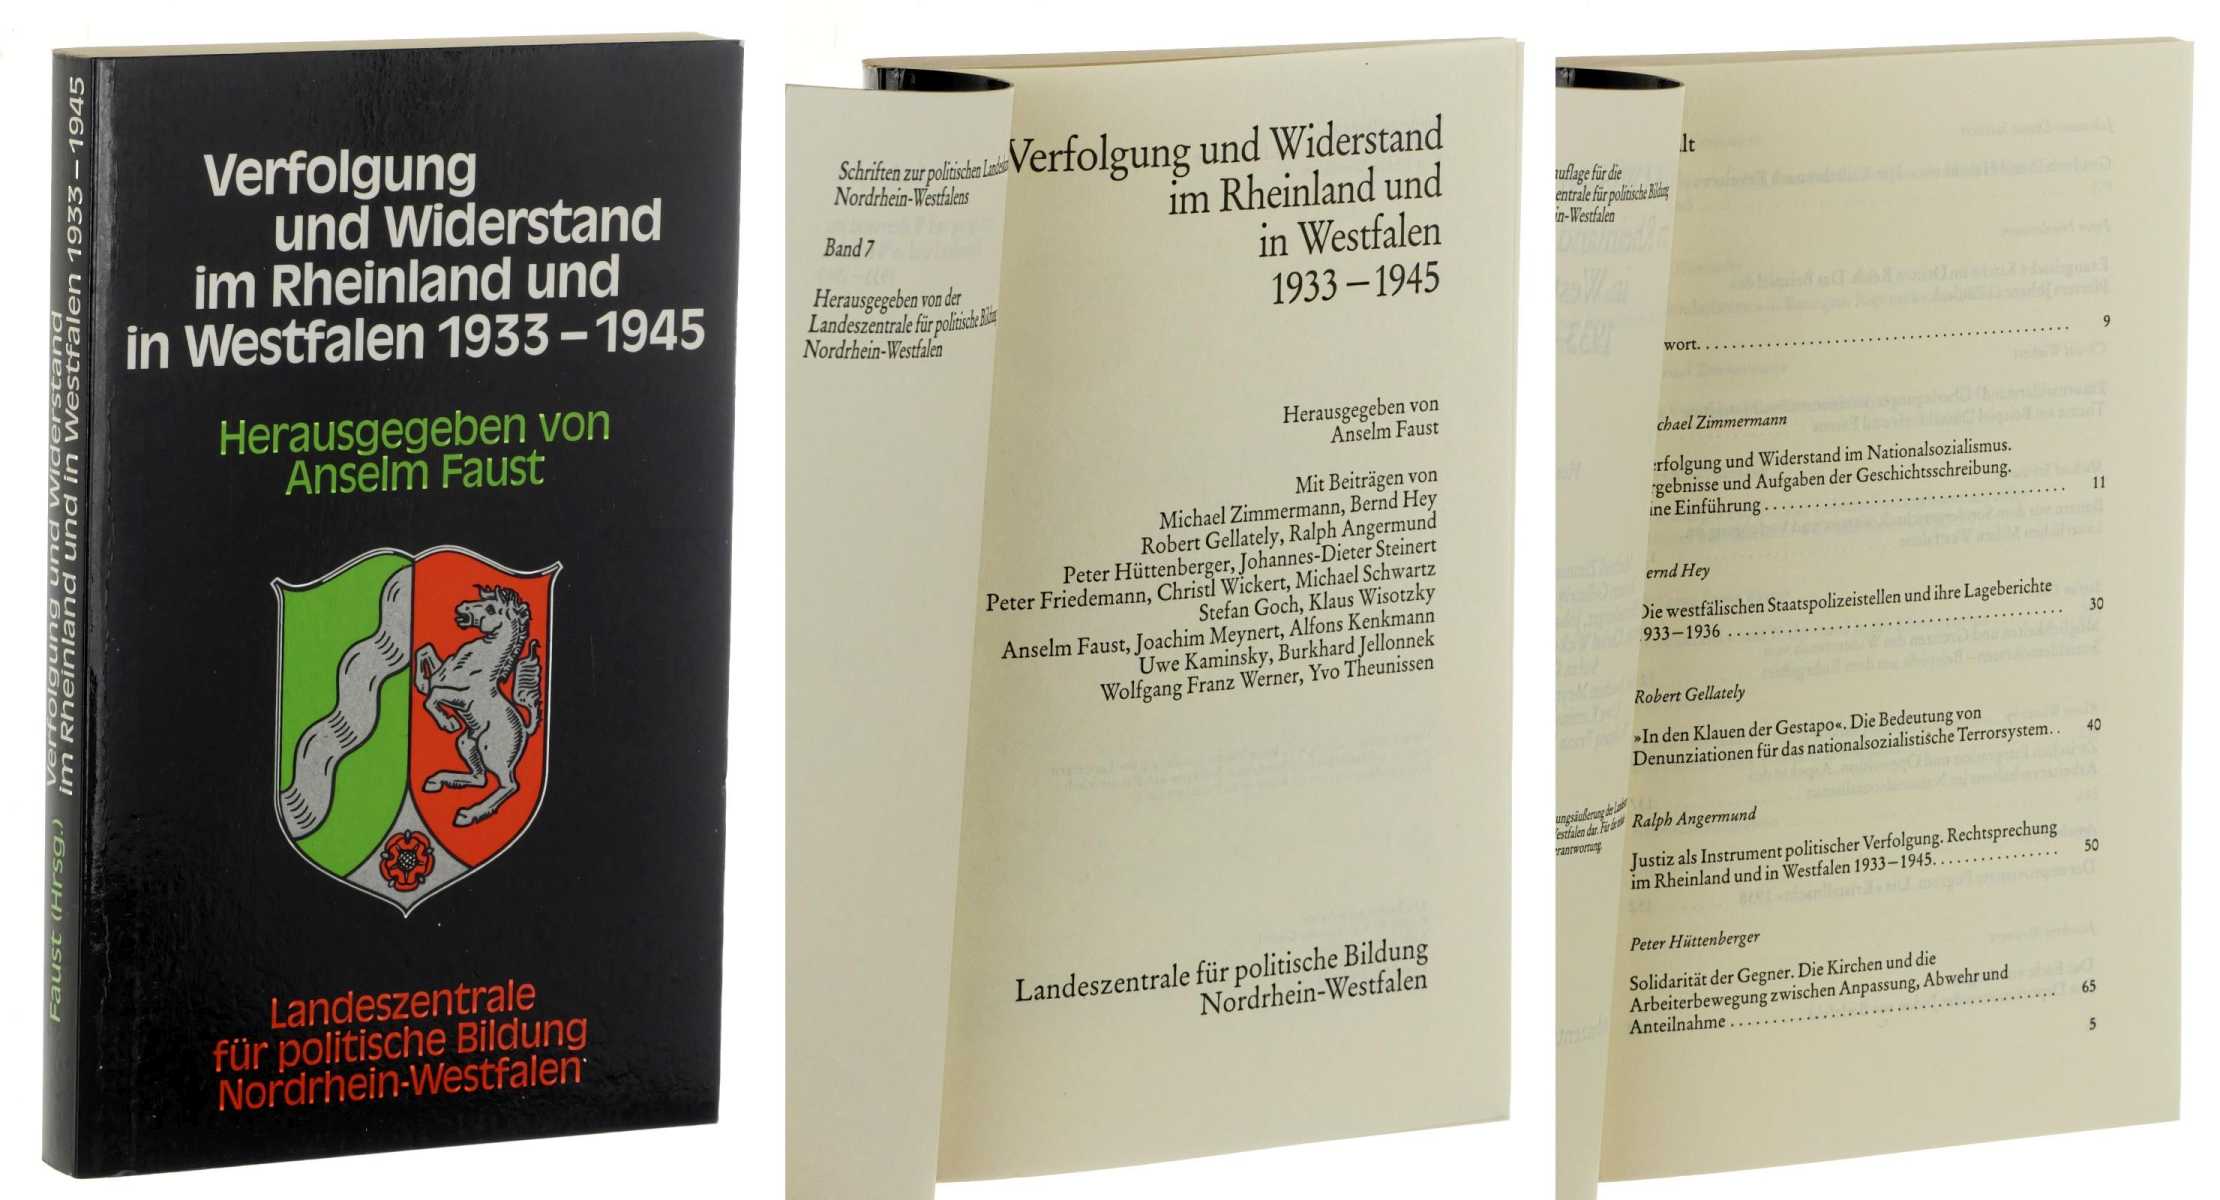   Verfolgung und Widerstand im Rheinland und in Westfalen 1933 - 1945. 